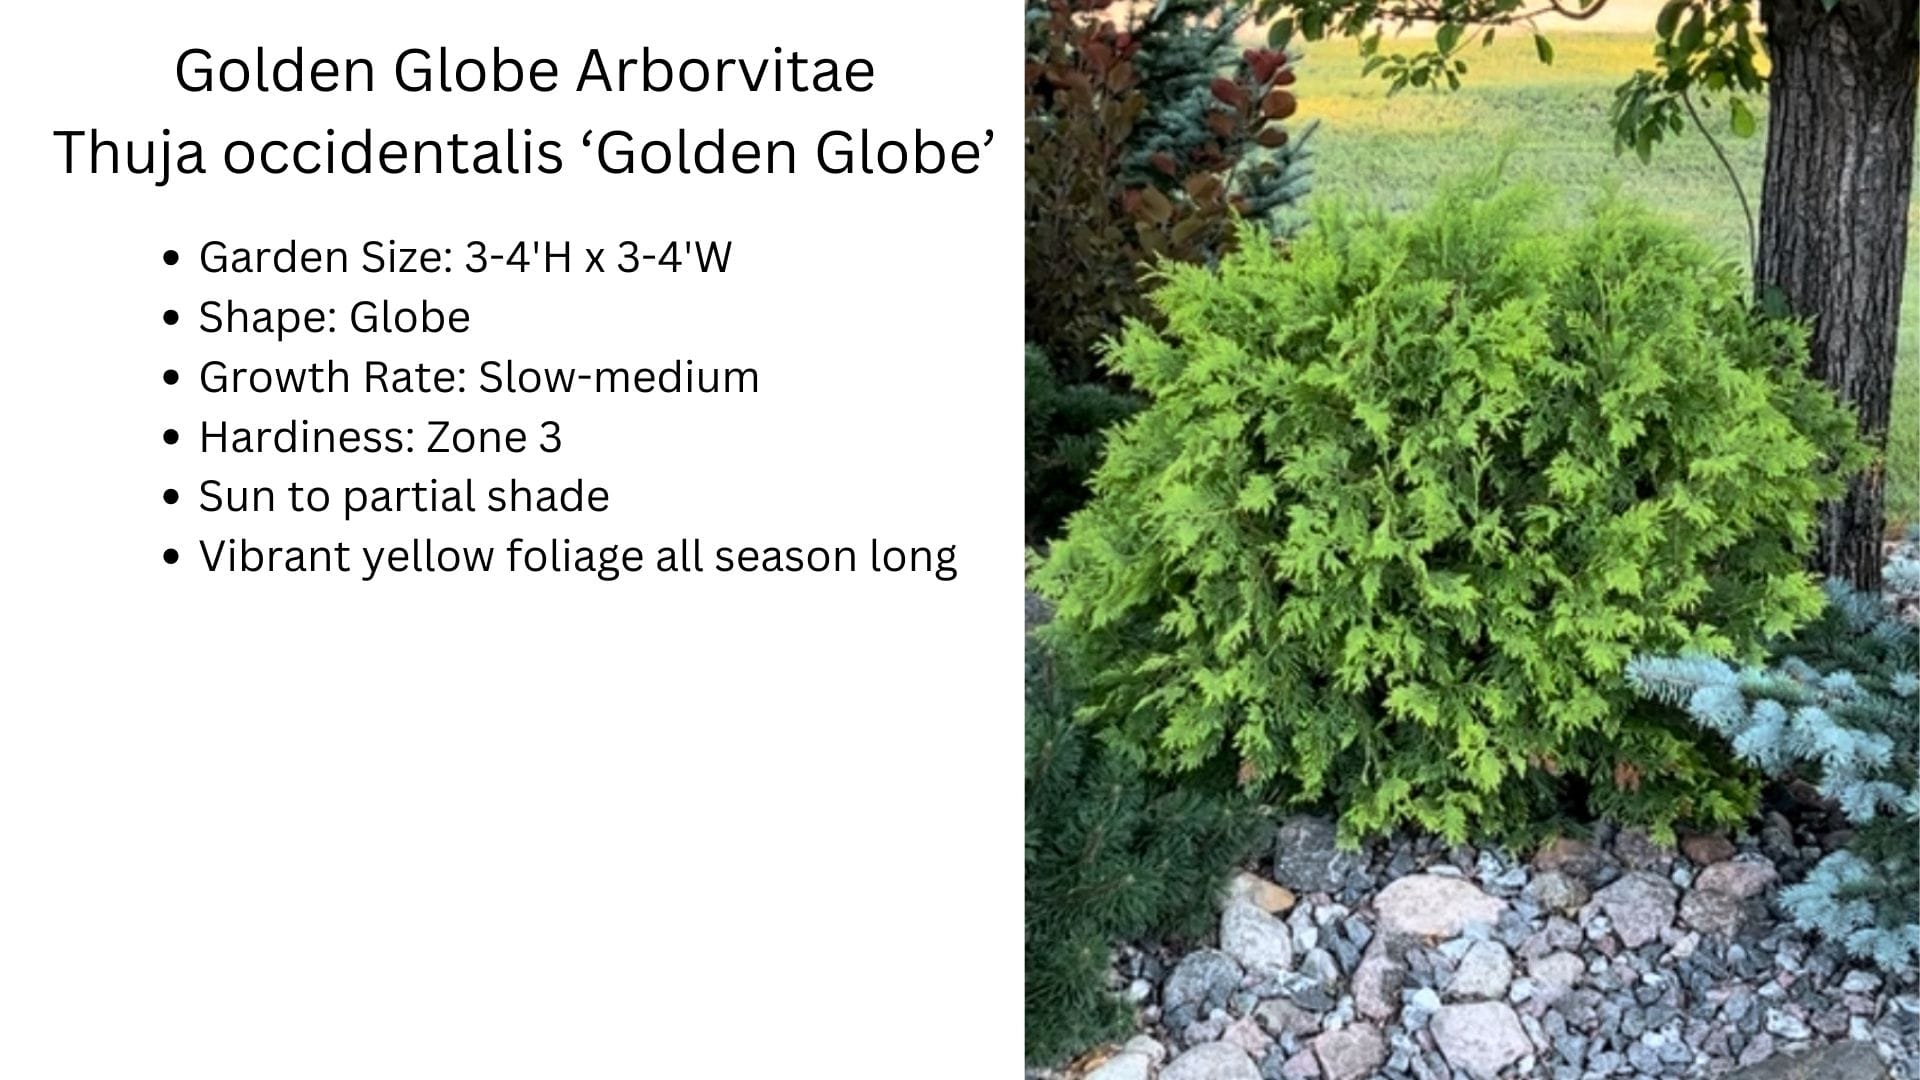 Golden Globe Arborvitae